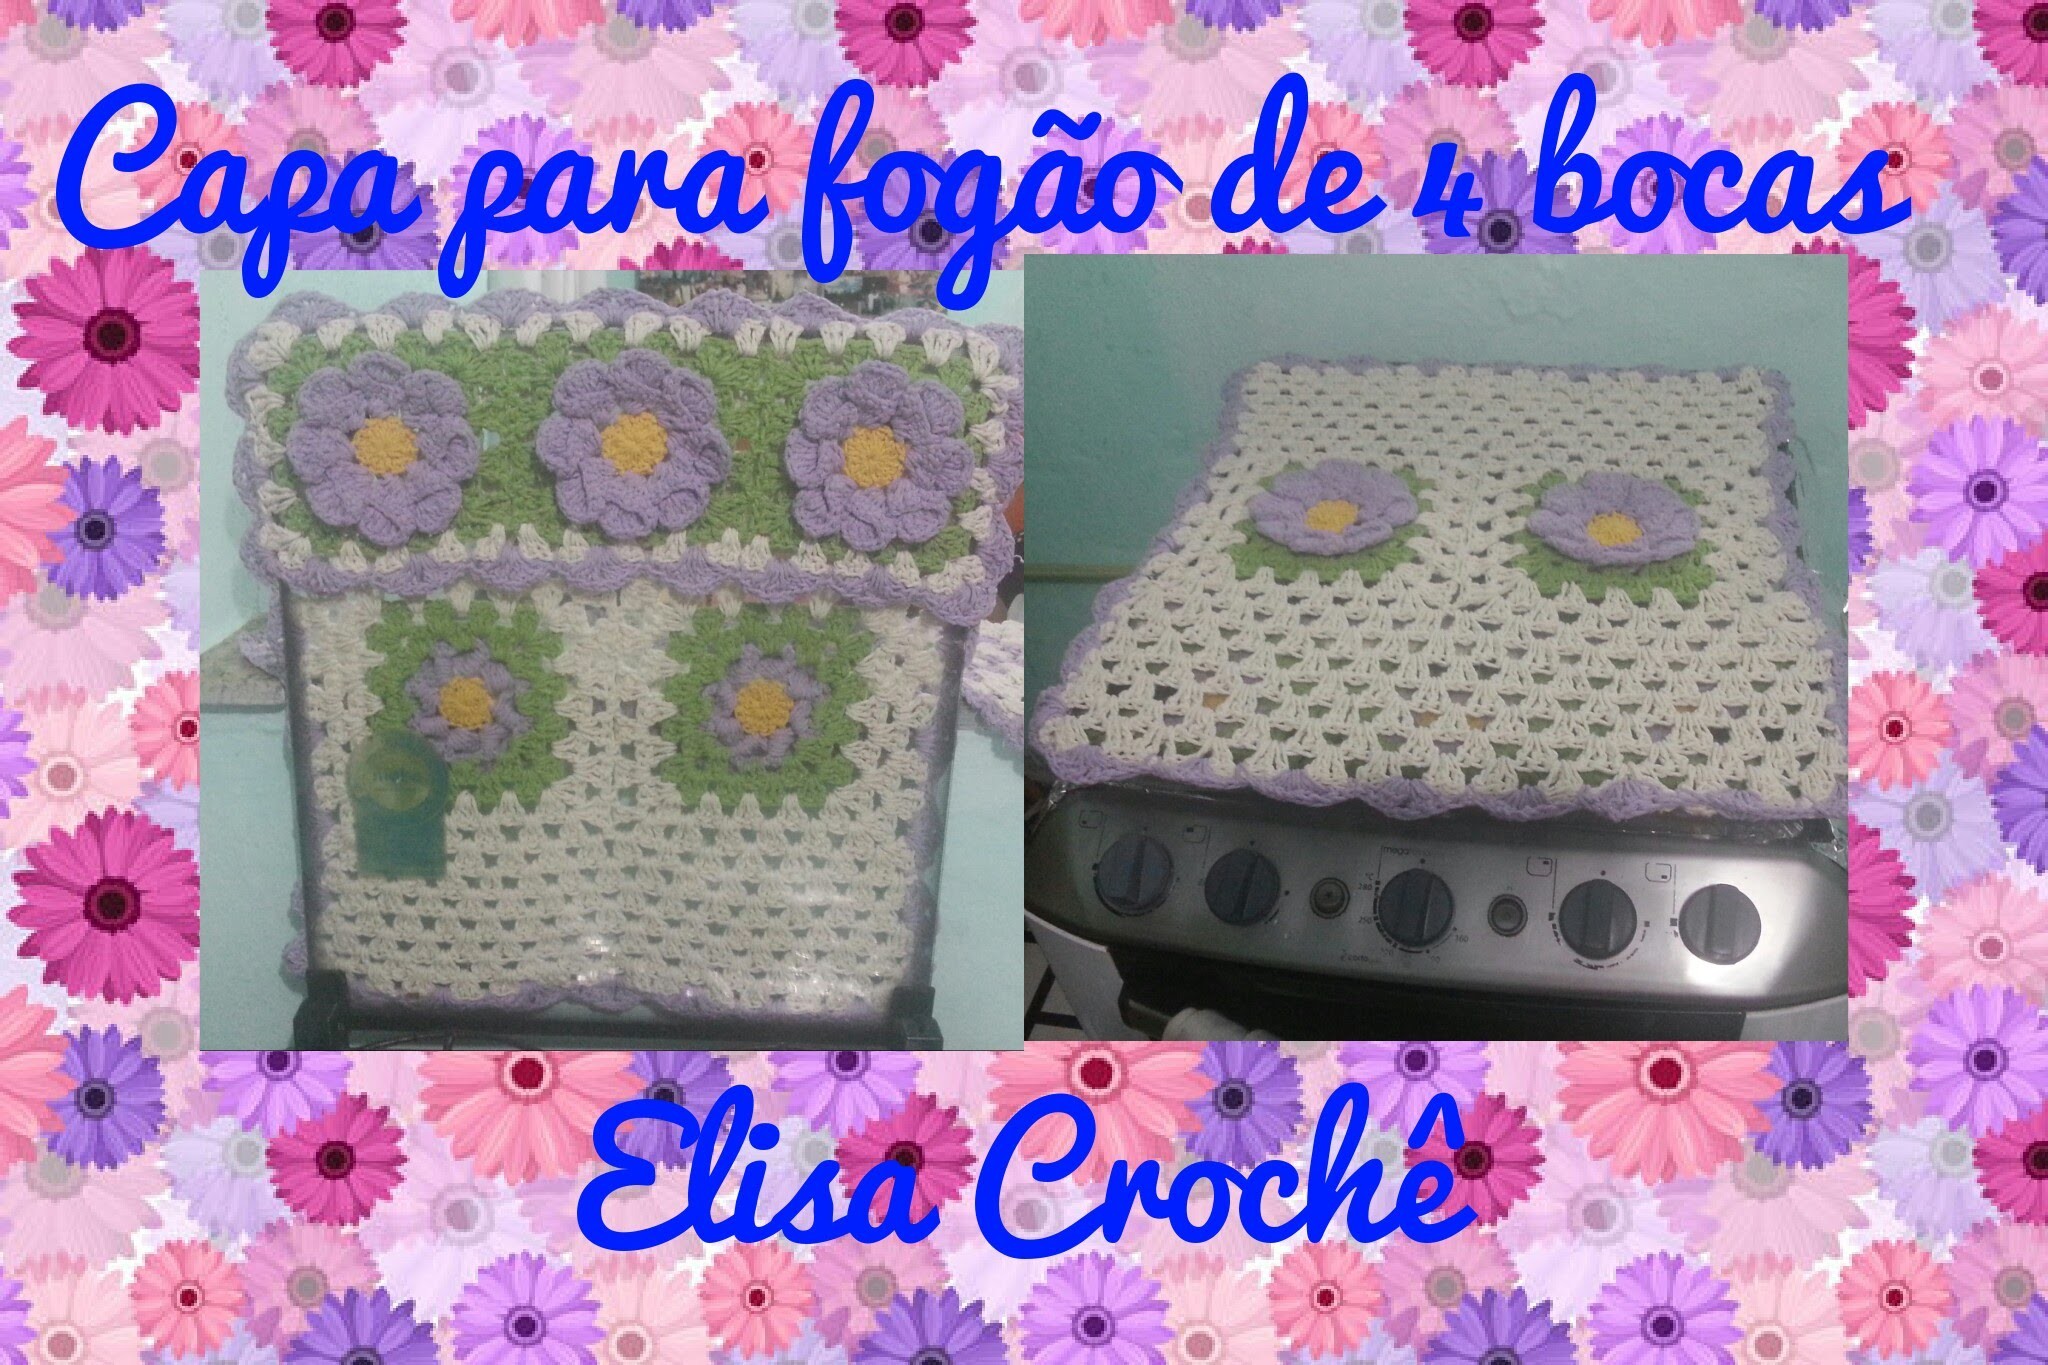 Capa do fogão de 4 bocas em crochê ( 1 parte)# Elisa Crochê